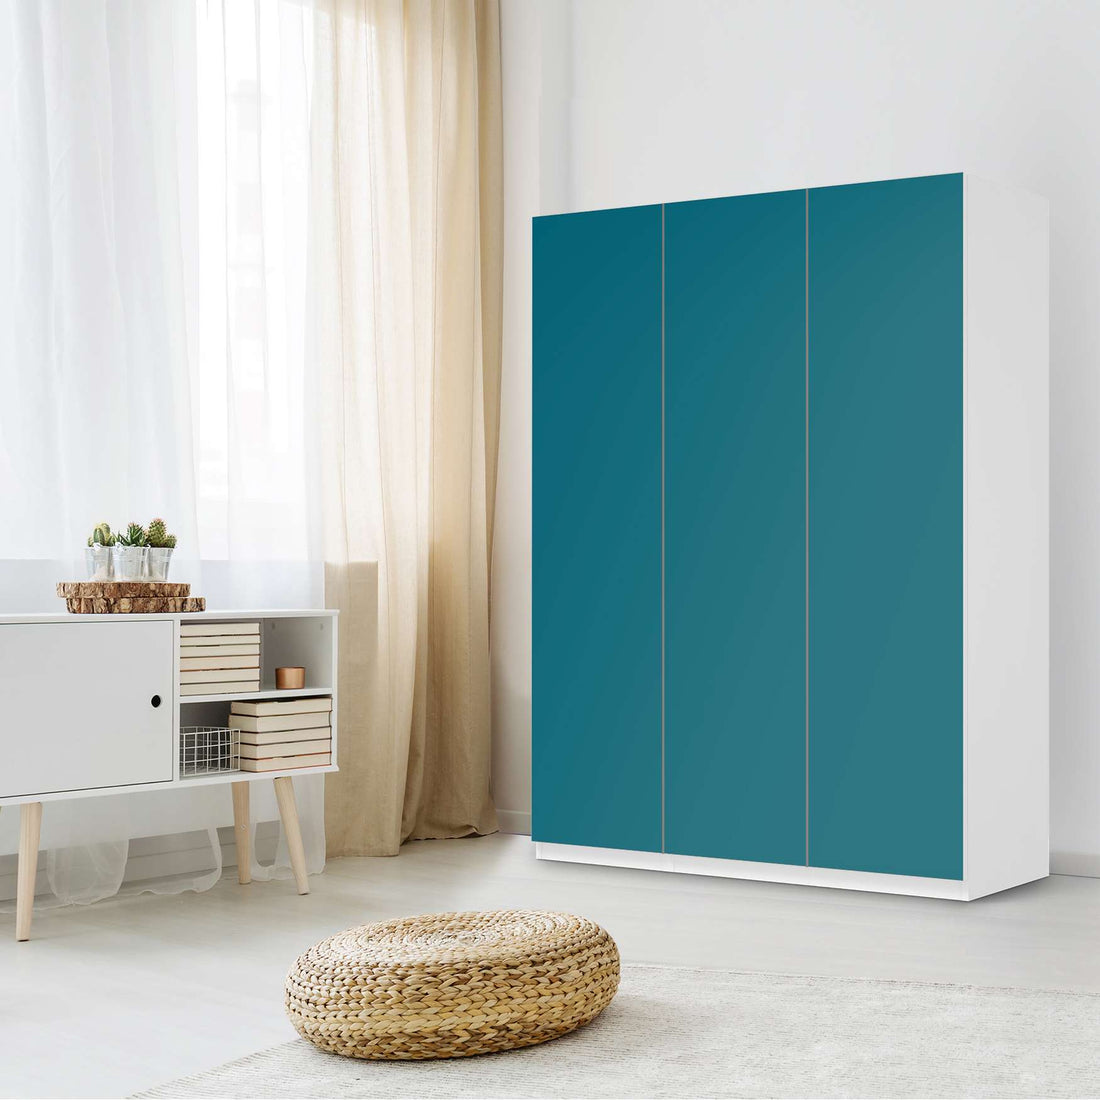 Folie für Möbel Türkisgrün Dark - IKEA Pax Schrank 201 cm Höhe - 3 Türen - Schlafzimmer